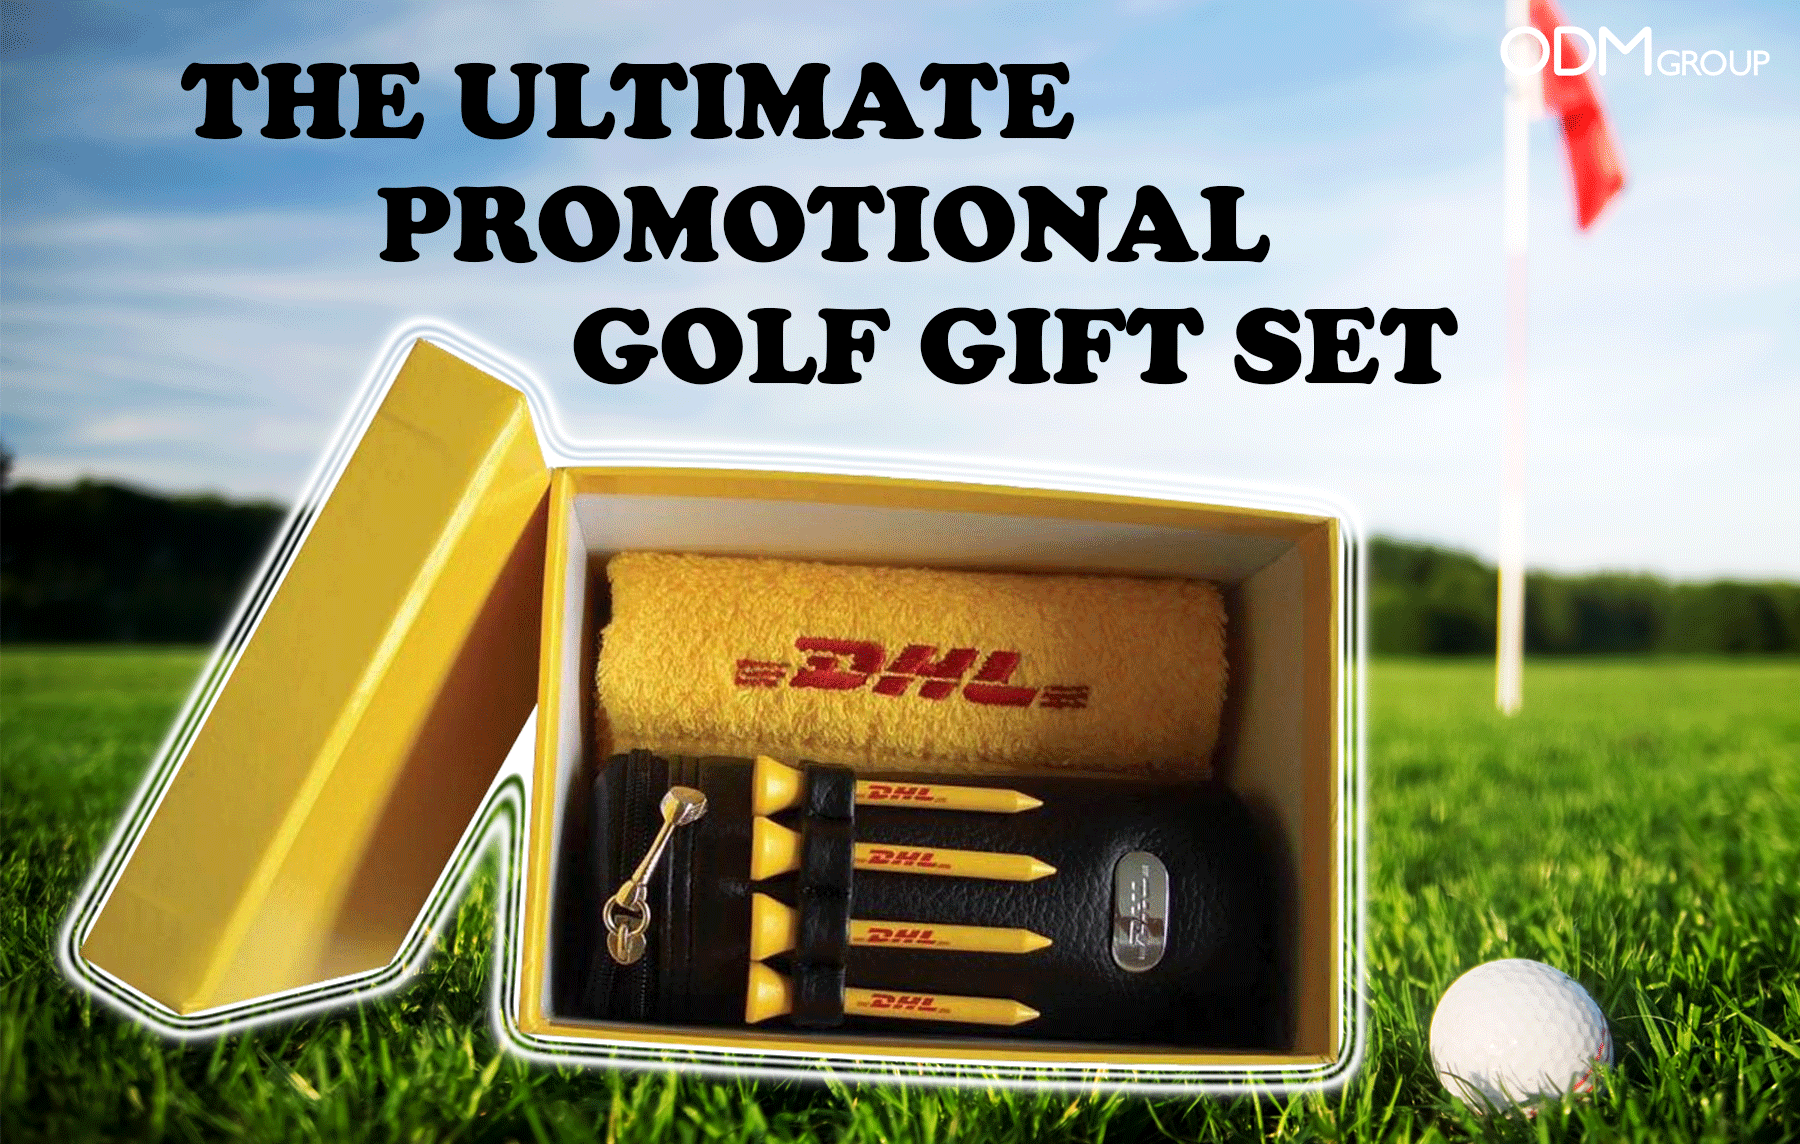 DHL Promotional Golf Gift Set